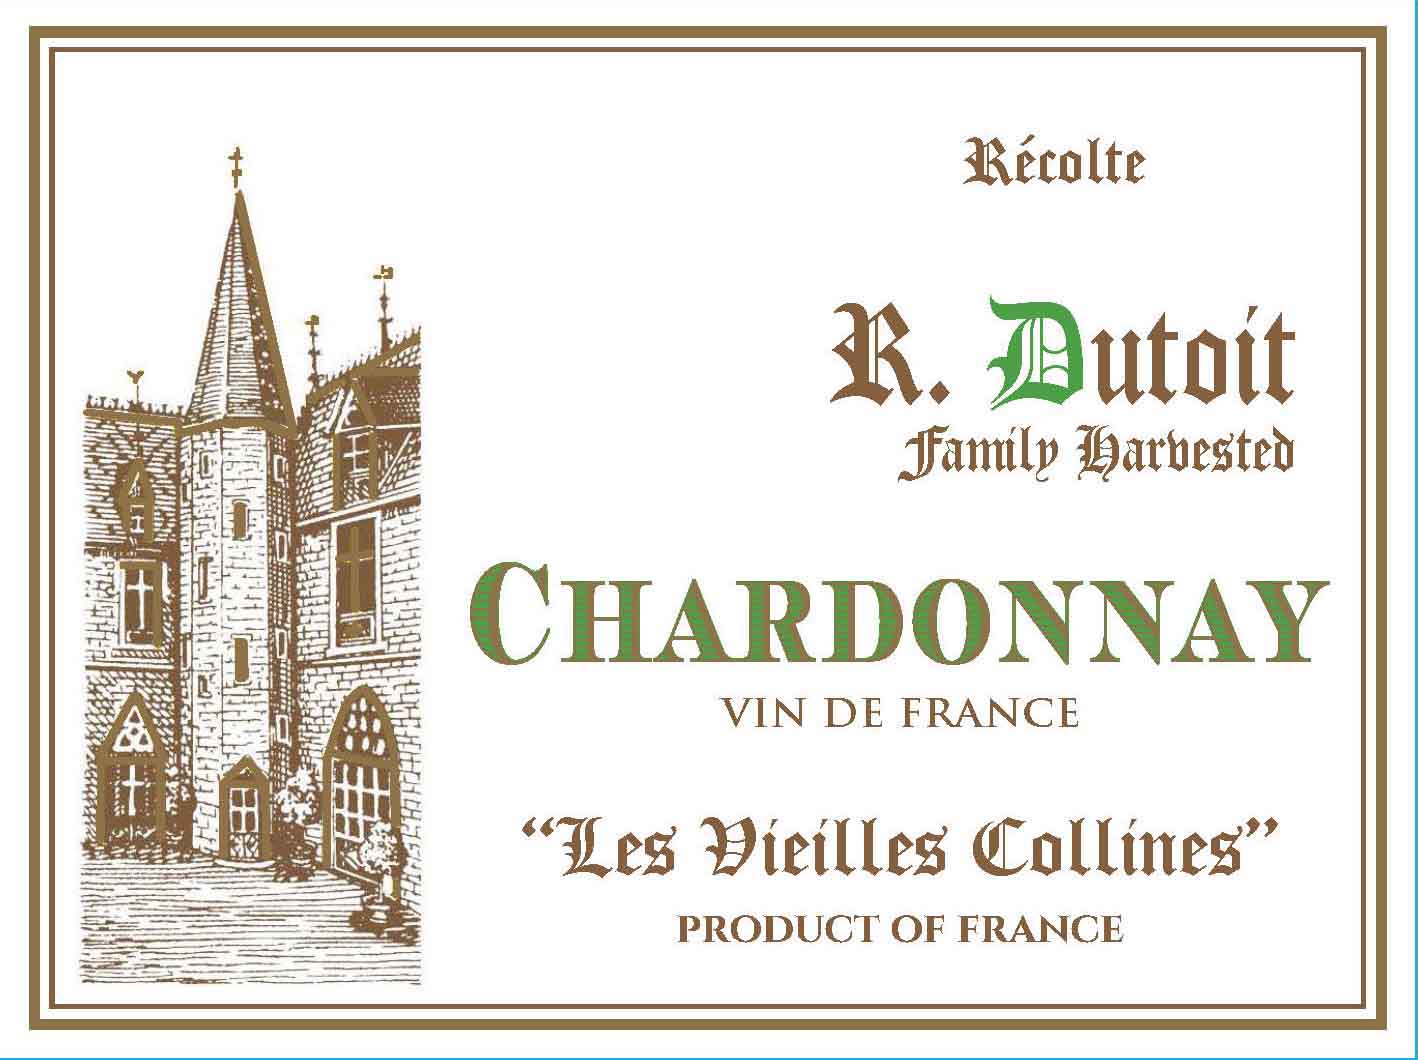 R. Dutoit - Les Vieilles Collines Chardonnay label